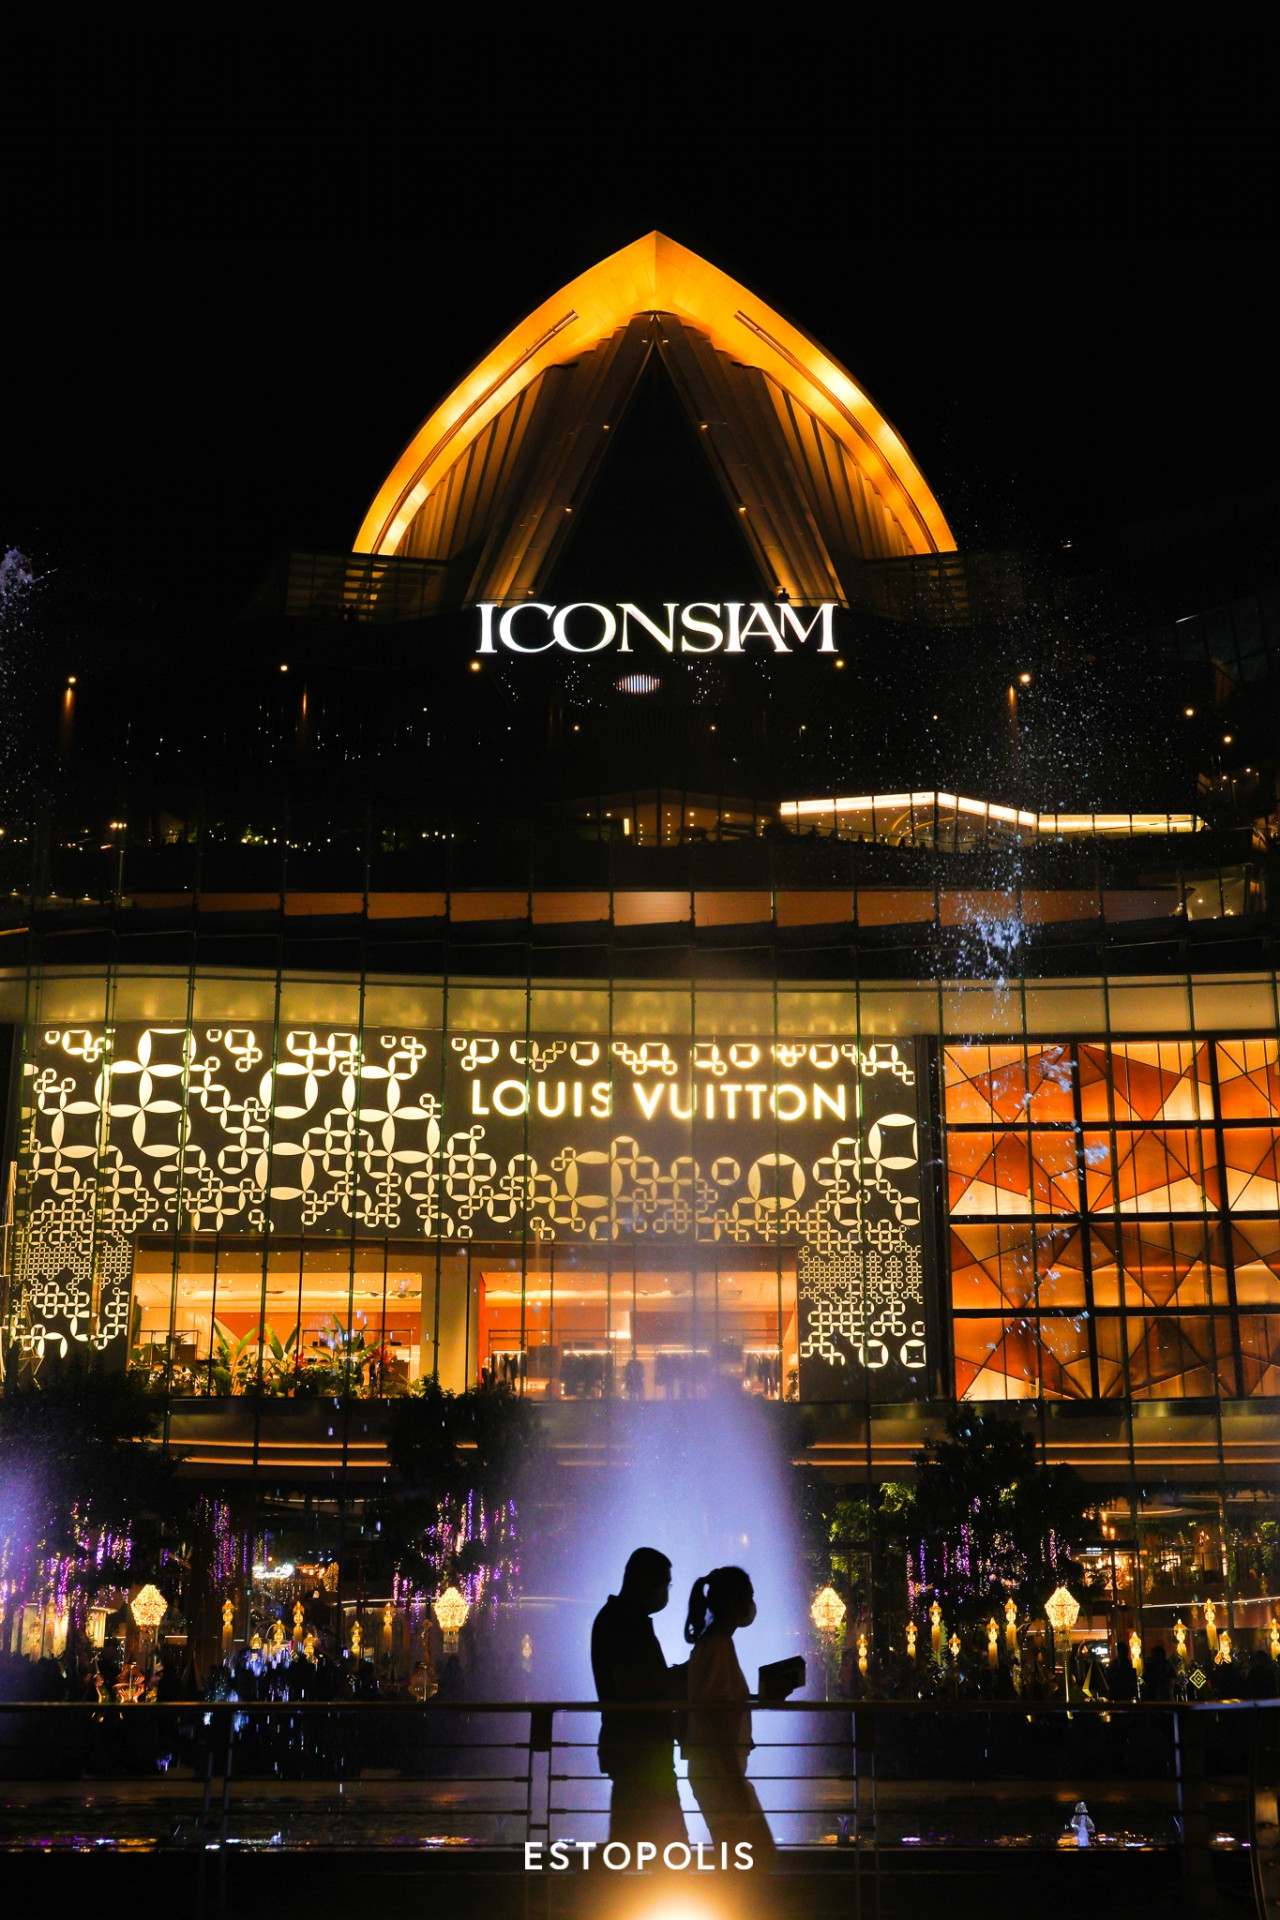 รีวิวเทศกาลงานไฟ ICONSIAM 2020 ระบำน้ำพุ Bangkok Illumination 2020 At ICONSIAM